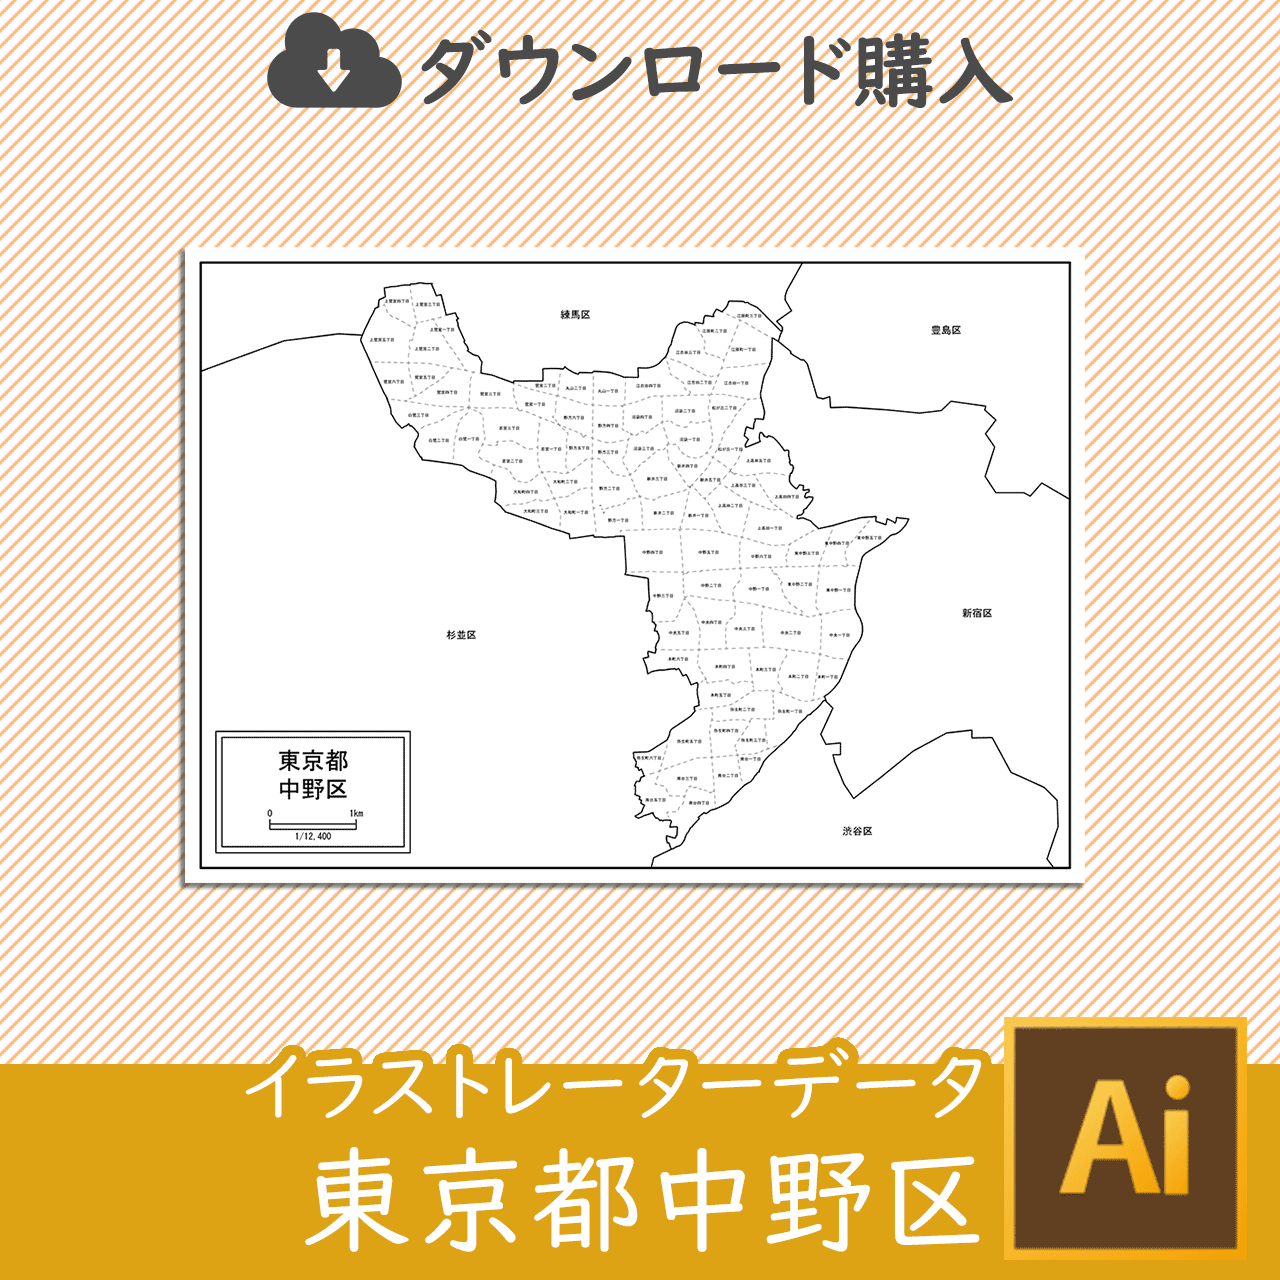 中野区の白地図のサムネイル画像